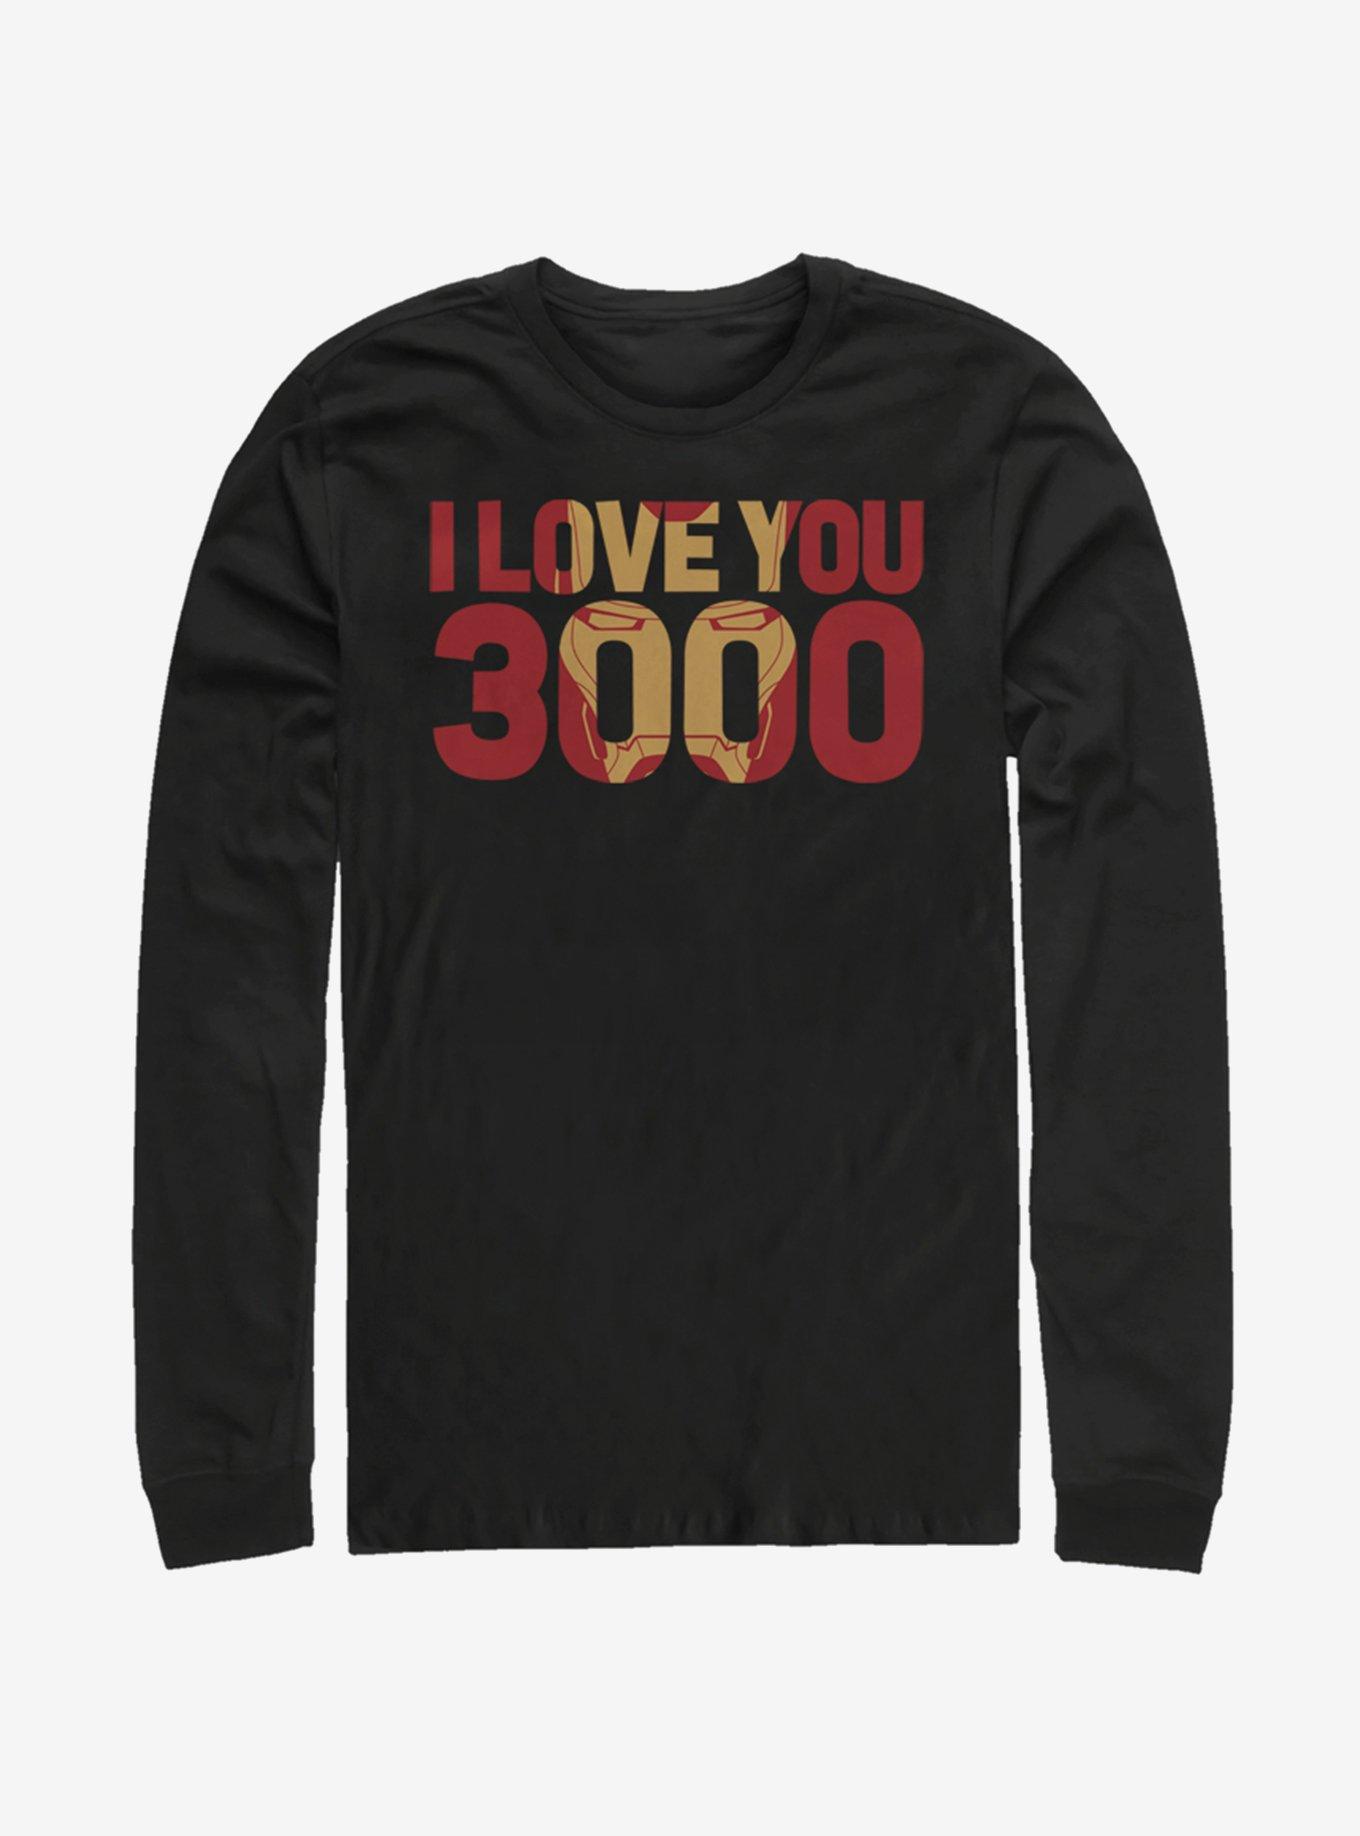 Marvel Avengers: Endgame Love You 3000 Long-Sleeve T-Shirt, BLACK, hi-res